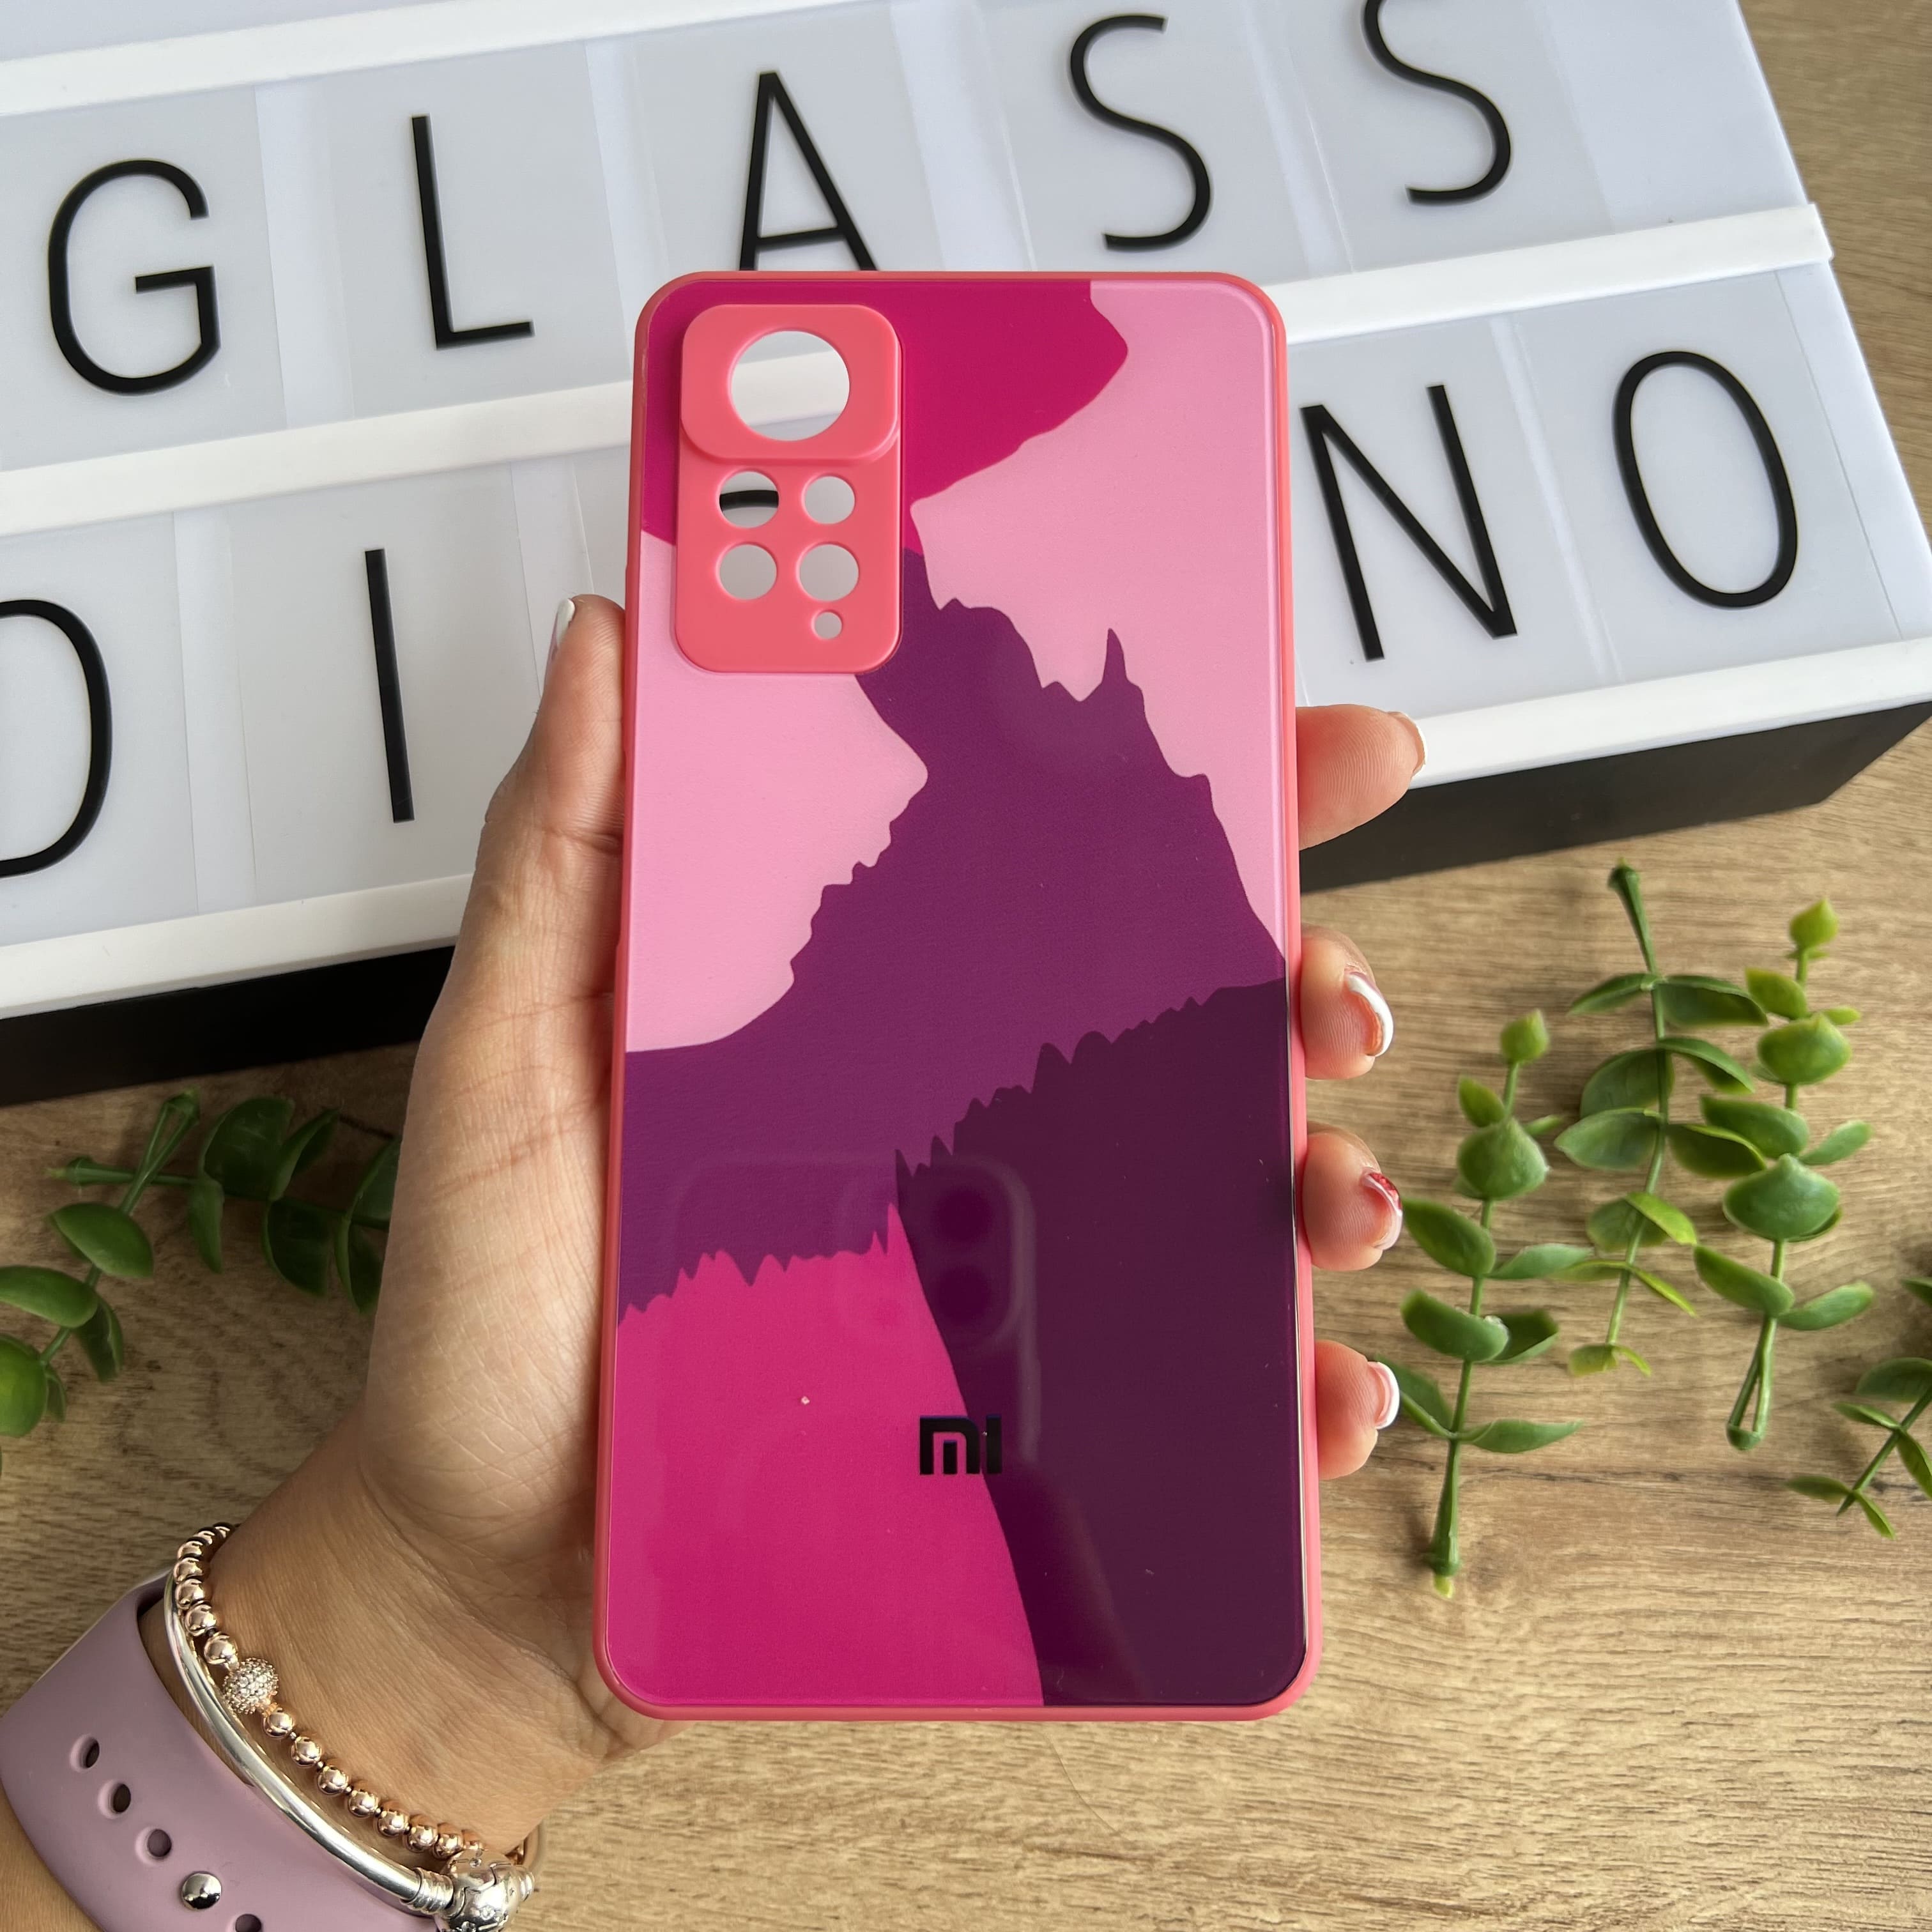 New Glass Diseño Xiaomi Redmi